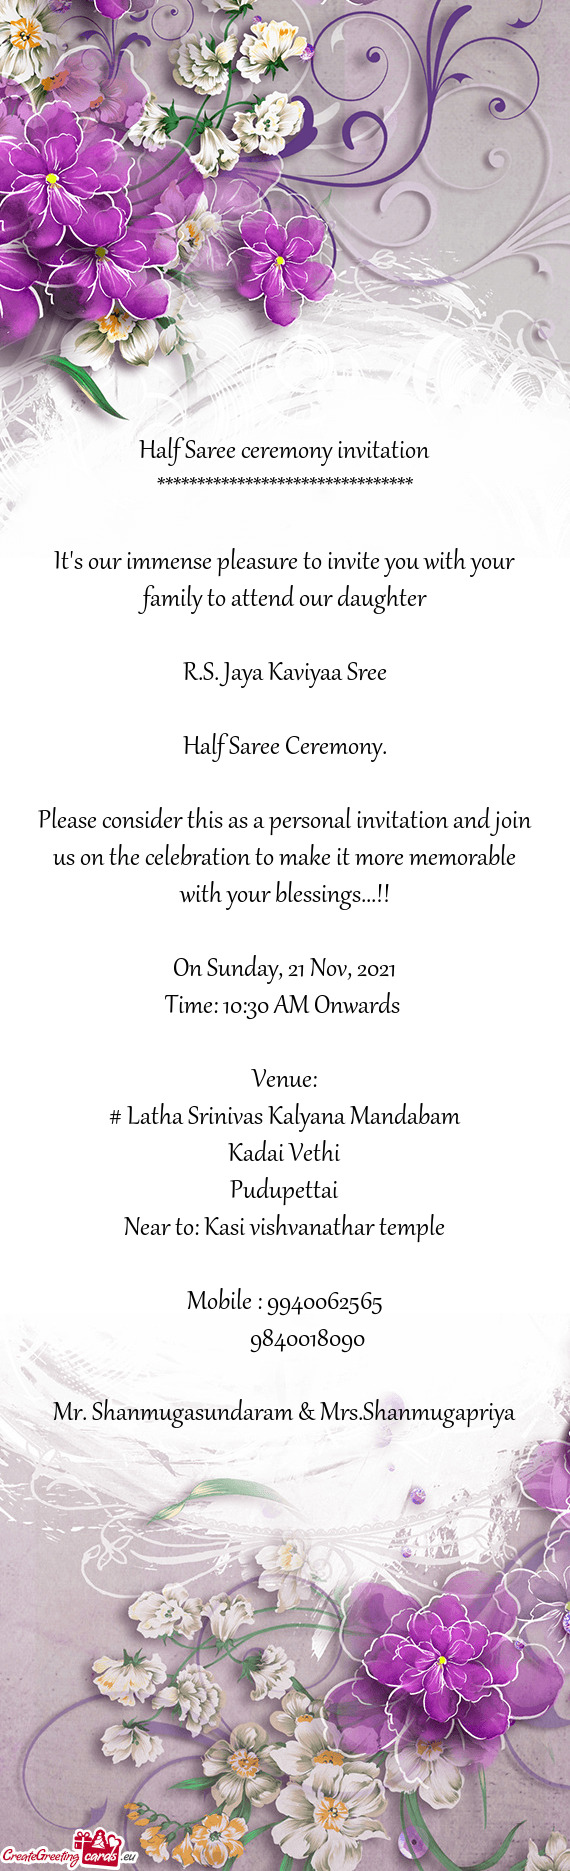 R.S. Jaya Kaviyaa Sree